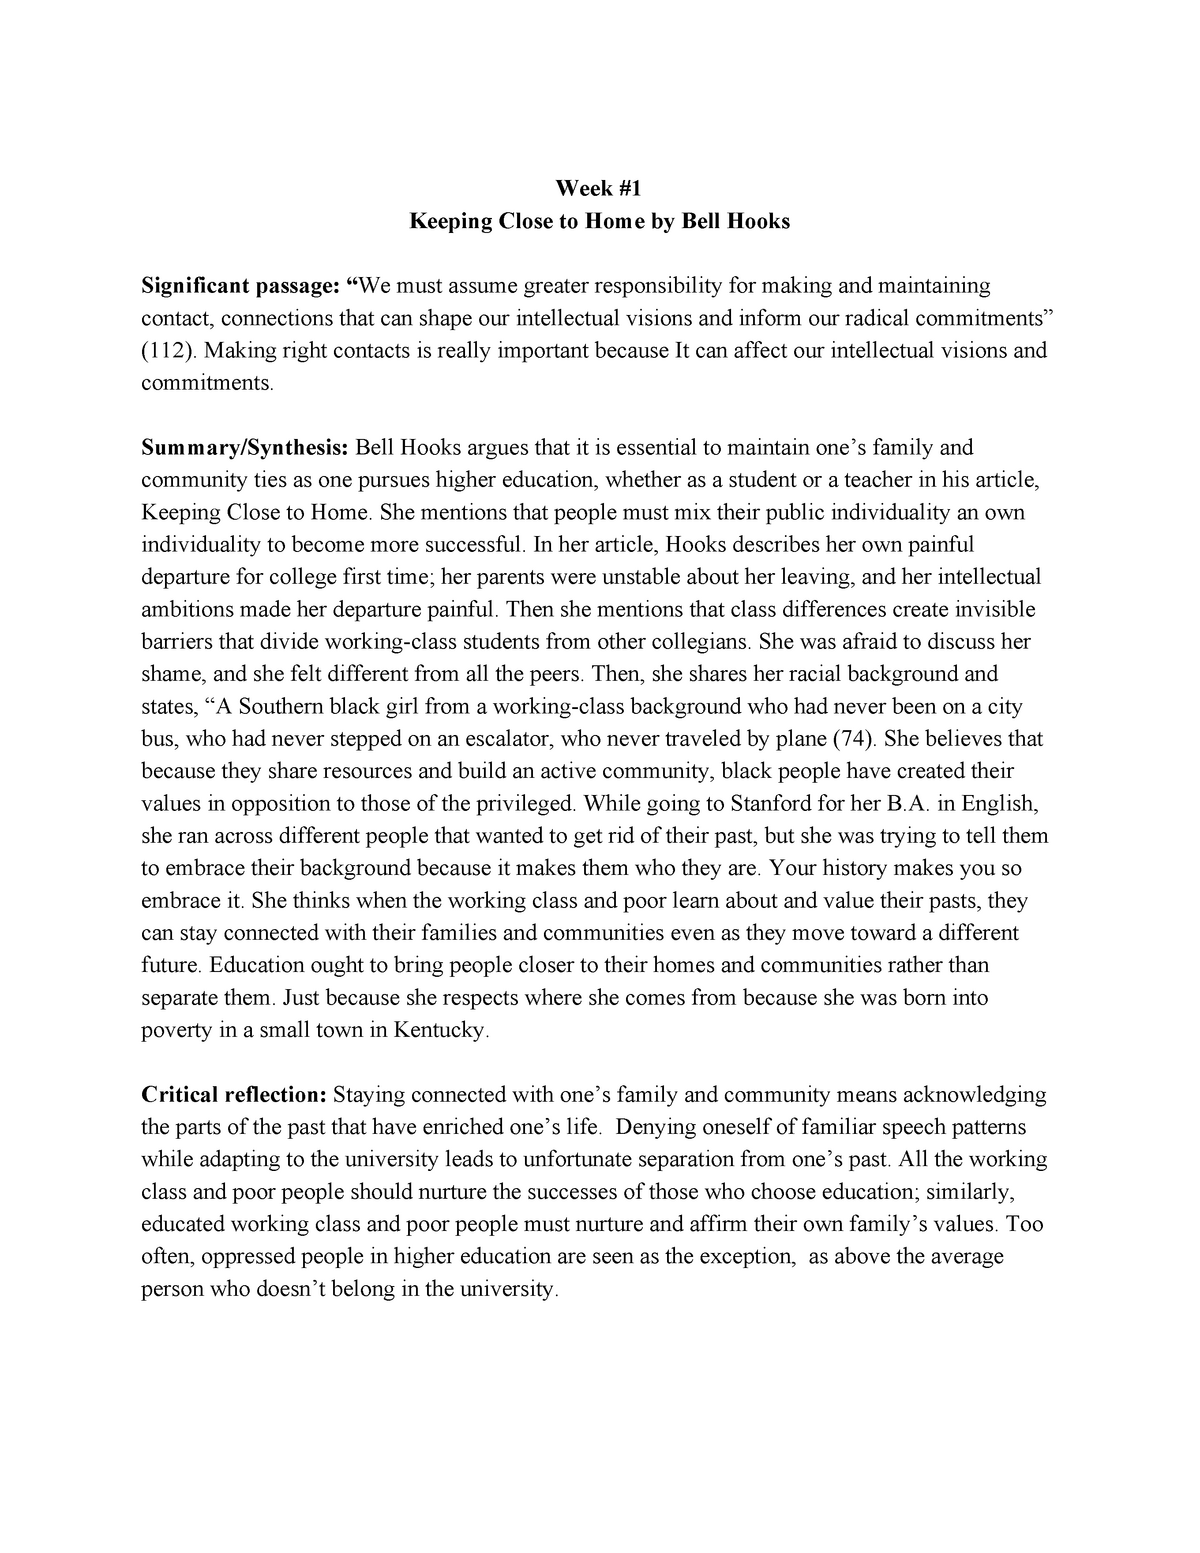 bell hooks lemonade essay pdf